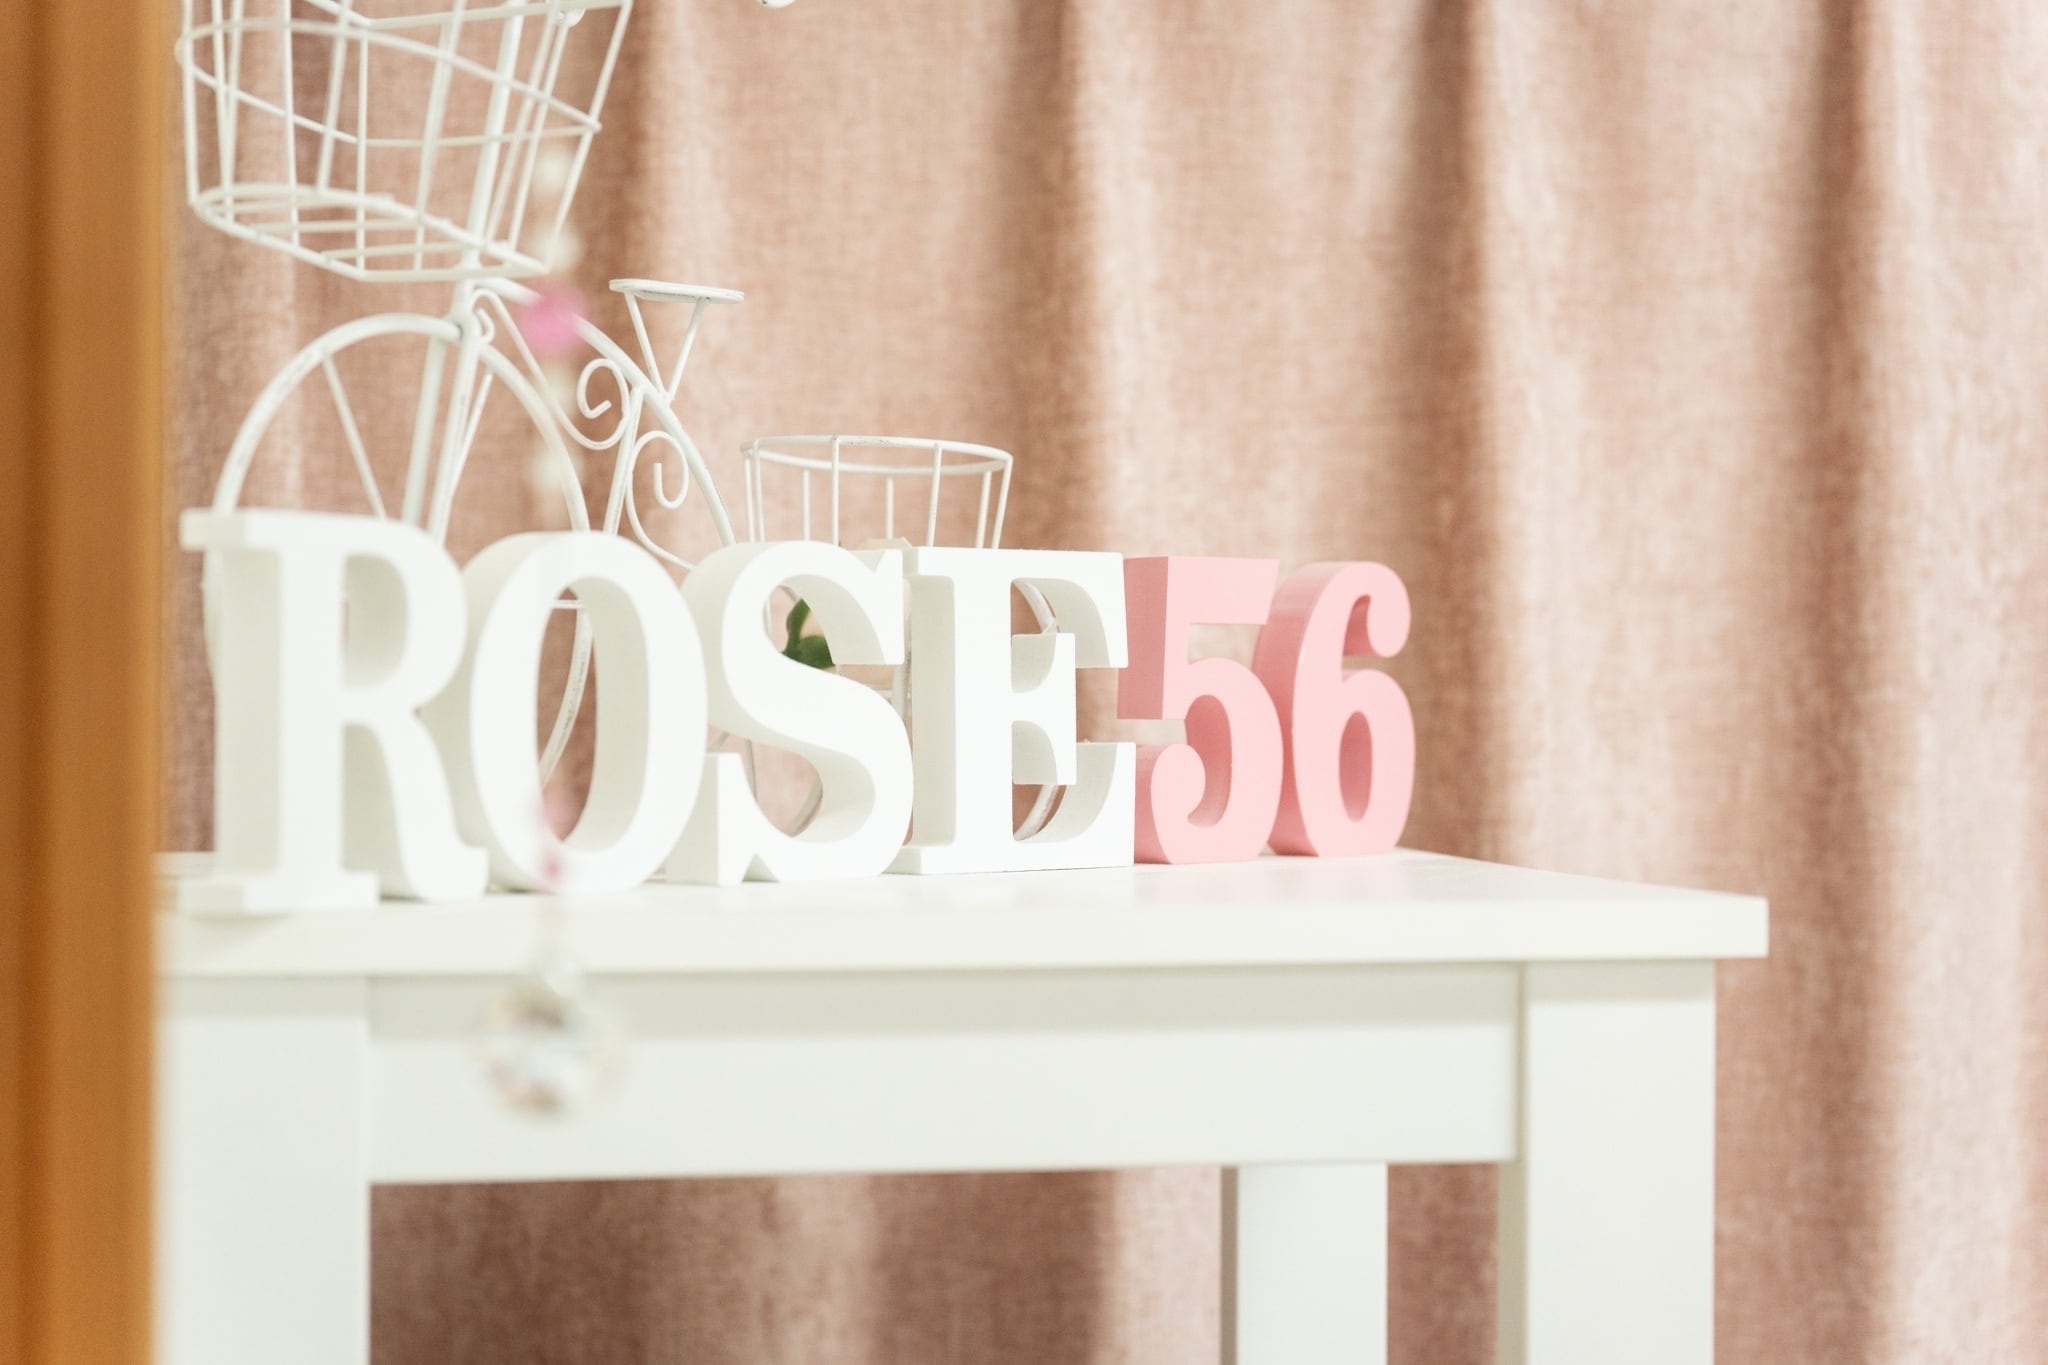 rose56